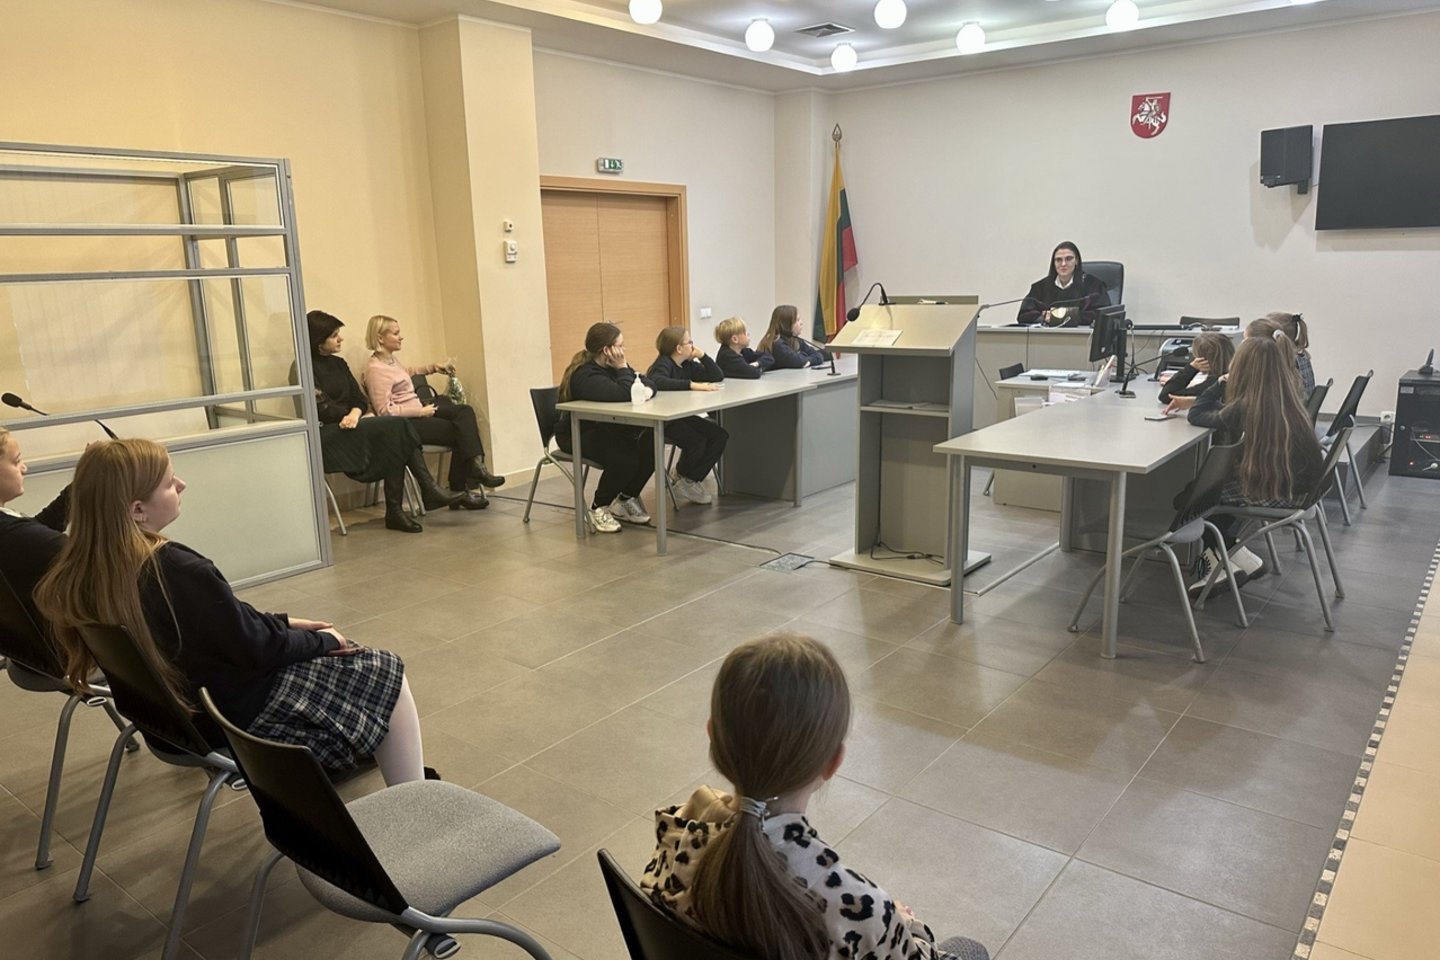  Kauno apylinkės teisme įvyko moksleivių ekskursija, kurios metu buvo pristatyta teisėjo profesija. <br> T. Merkevičiūtės nuotr. 